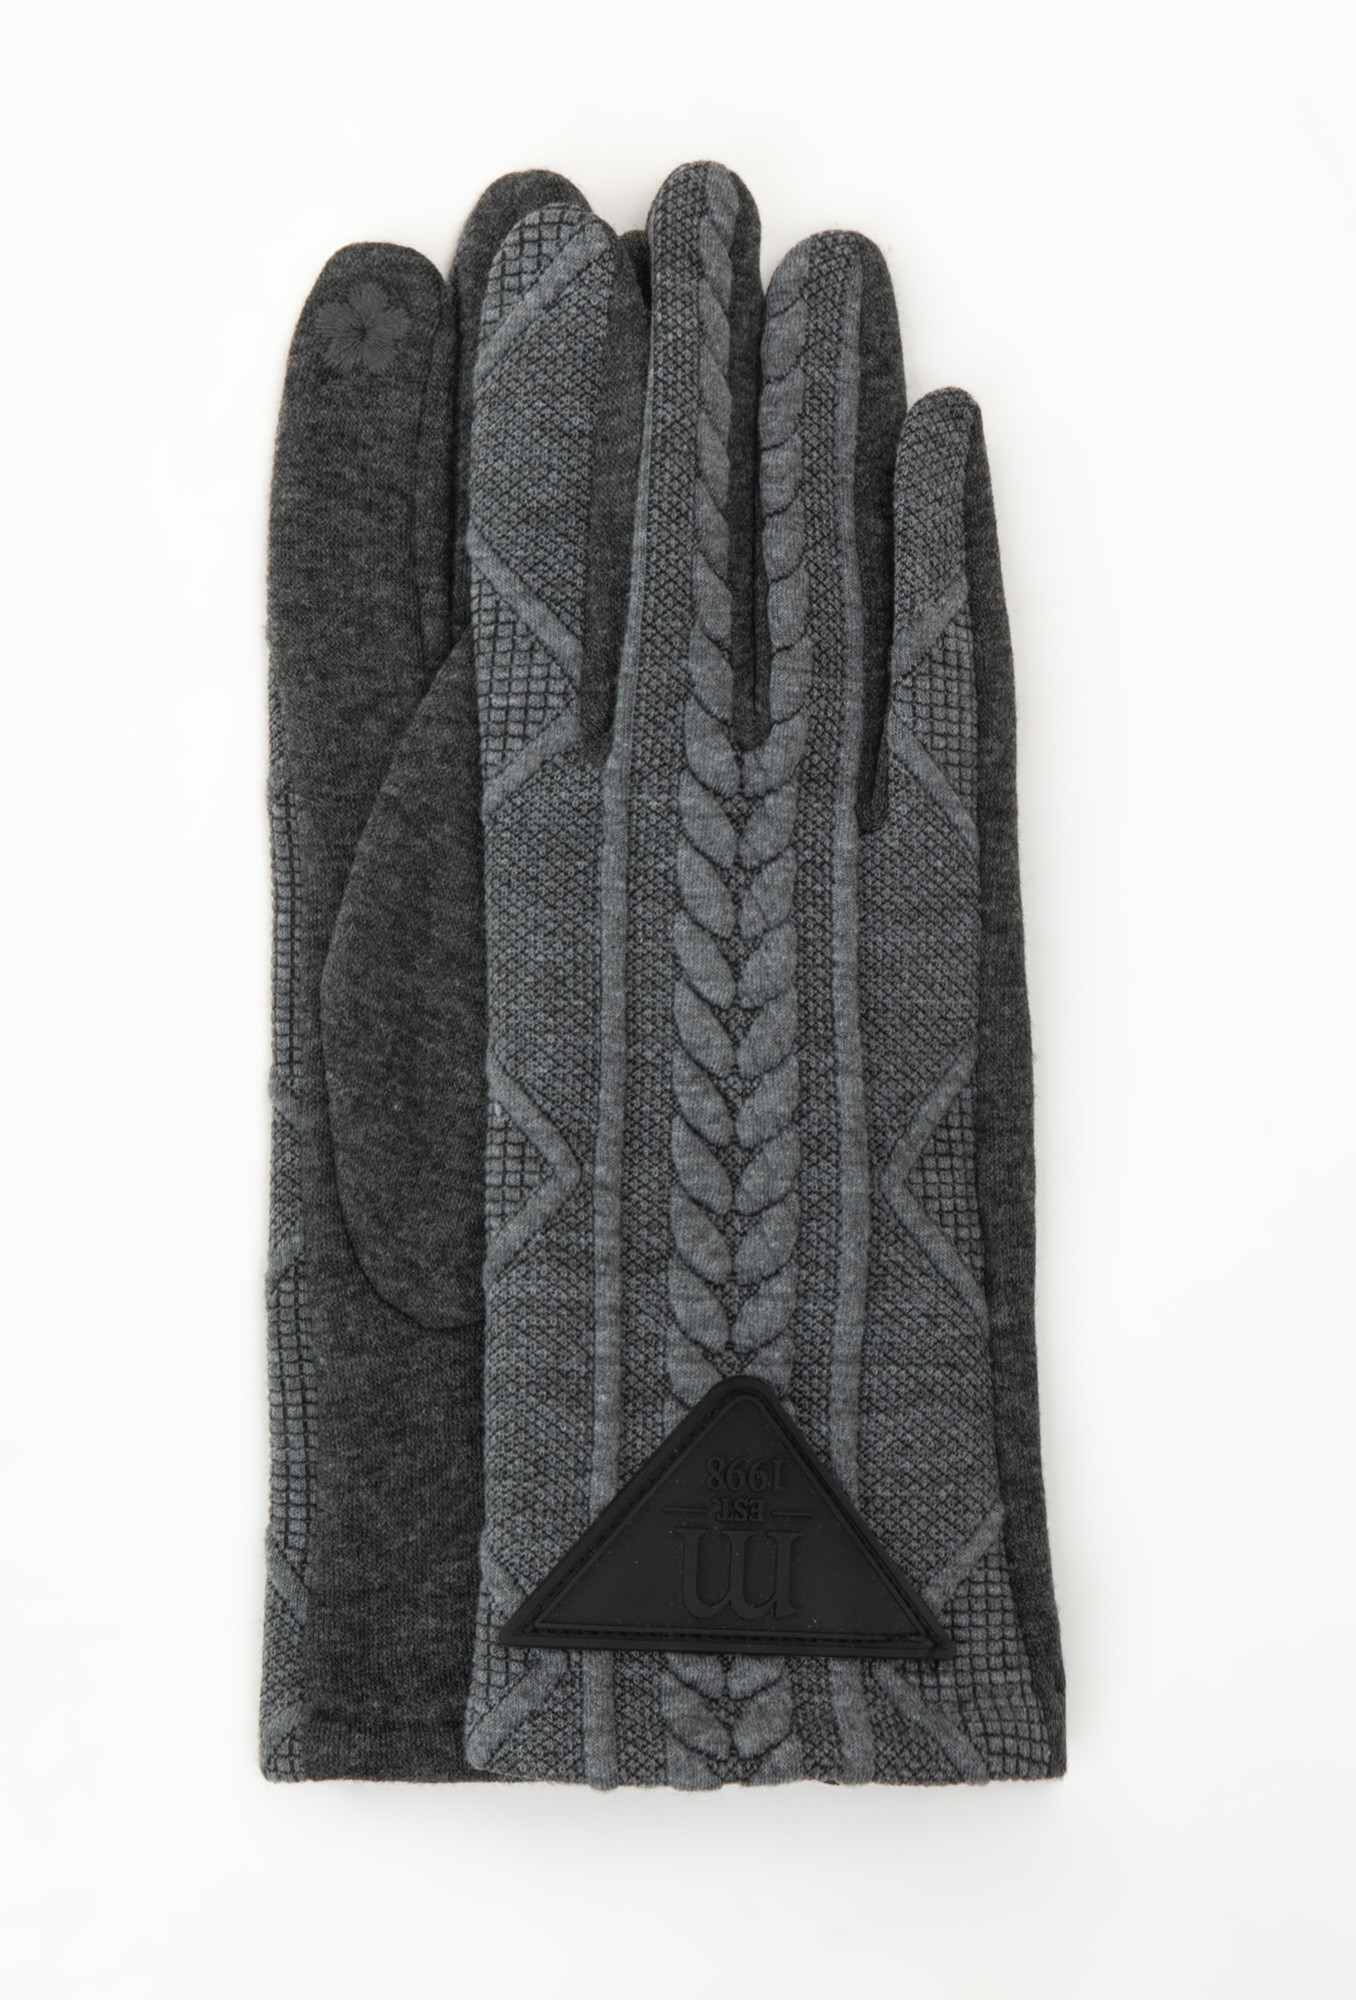 Monnari Rukavice Dámské pletené rukavice Grey L/XL